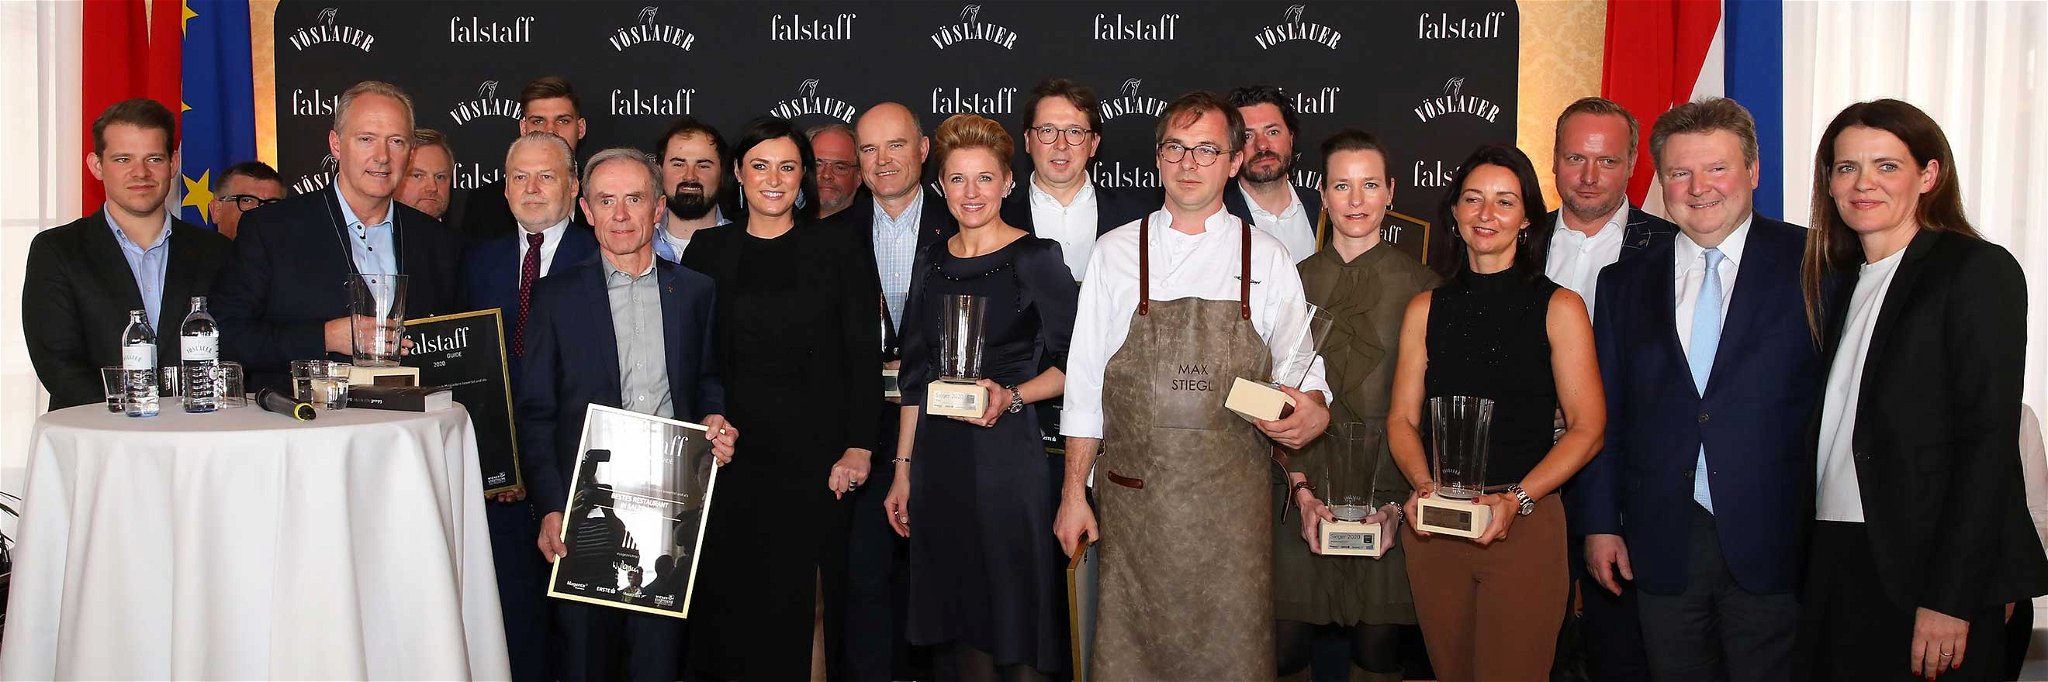 Die Sieger aus dem Falstaff Restaurantguide 2020